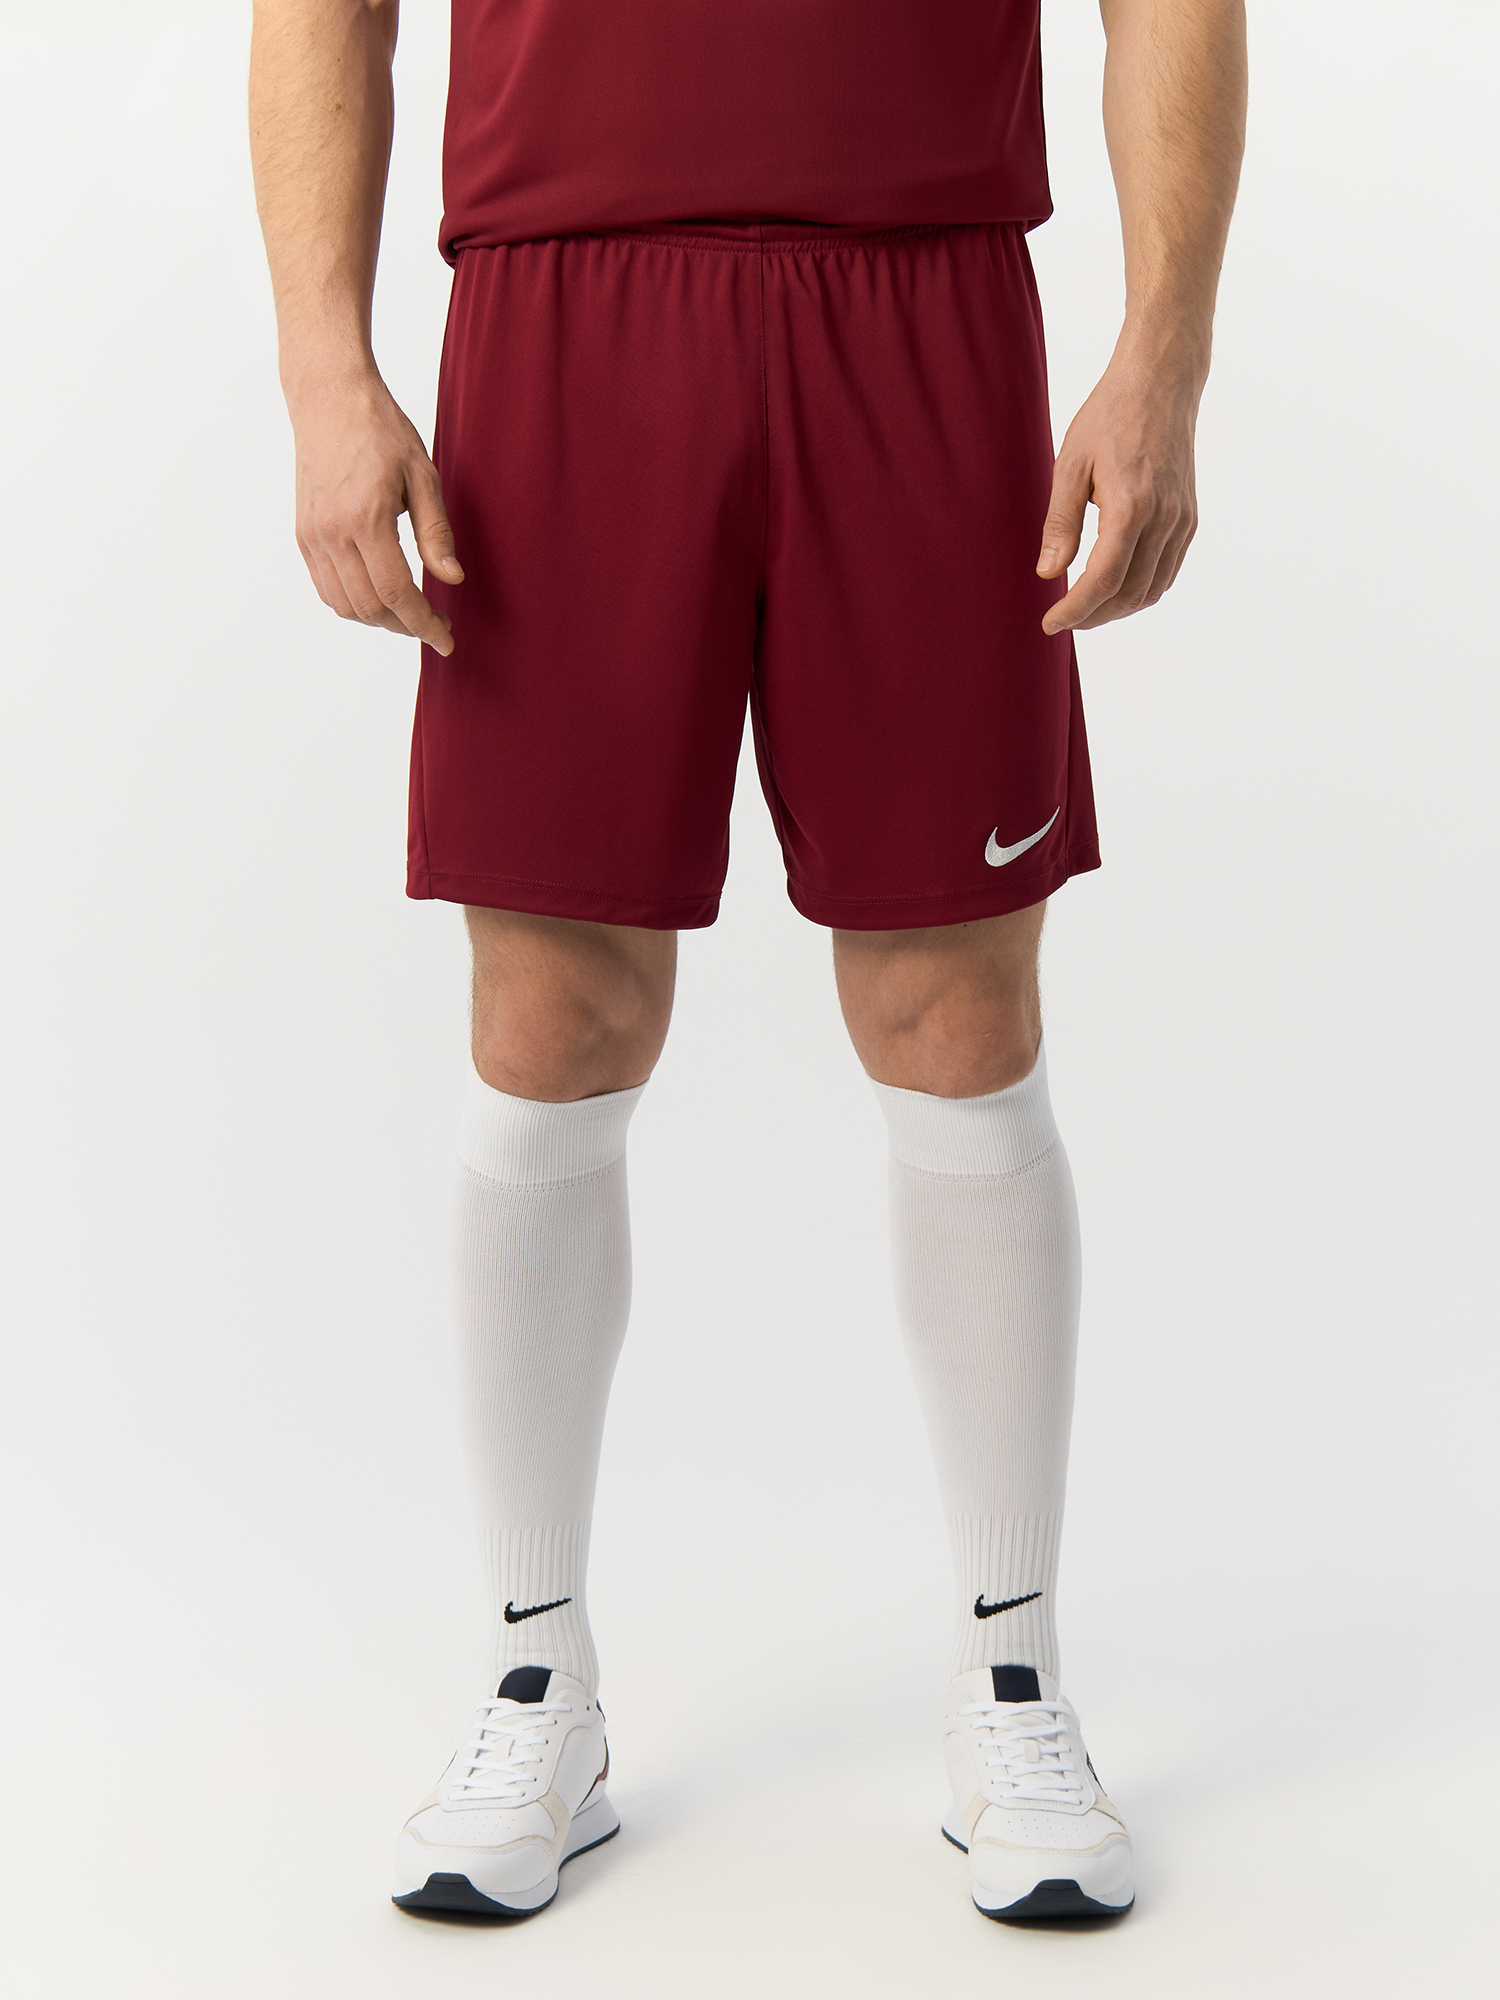 Шорты футбольные Nike размер M, бордовые, BV6855-677 - купить в Москве, цены на Мегамаркет | 100066206093